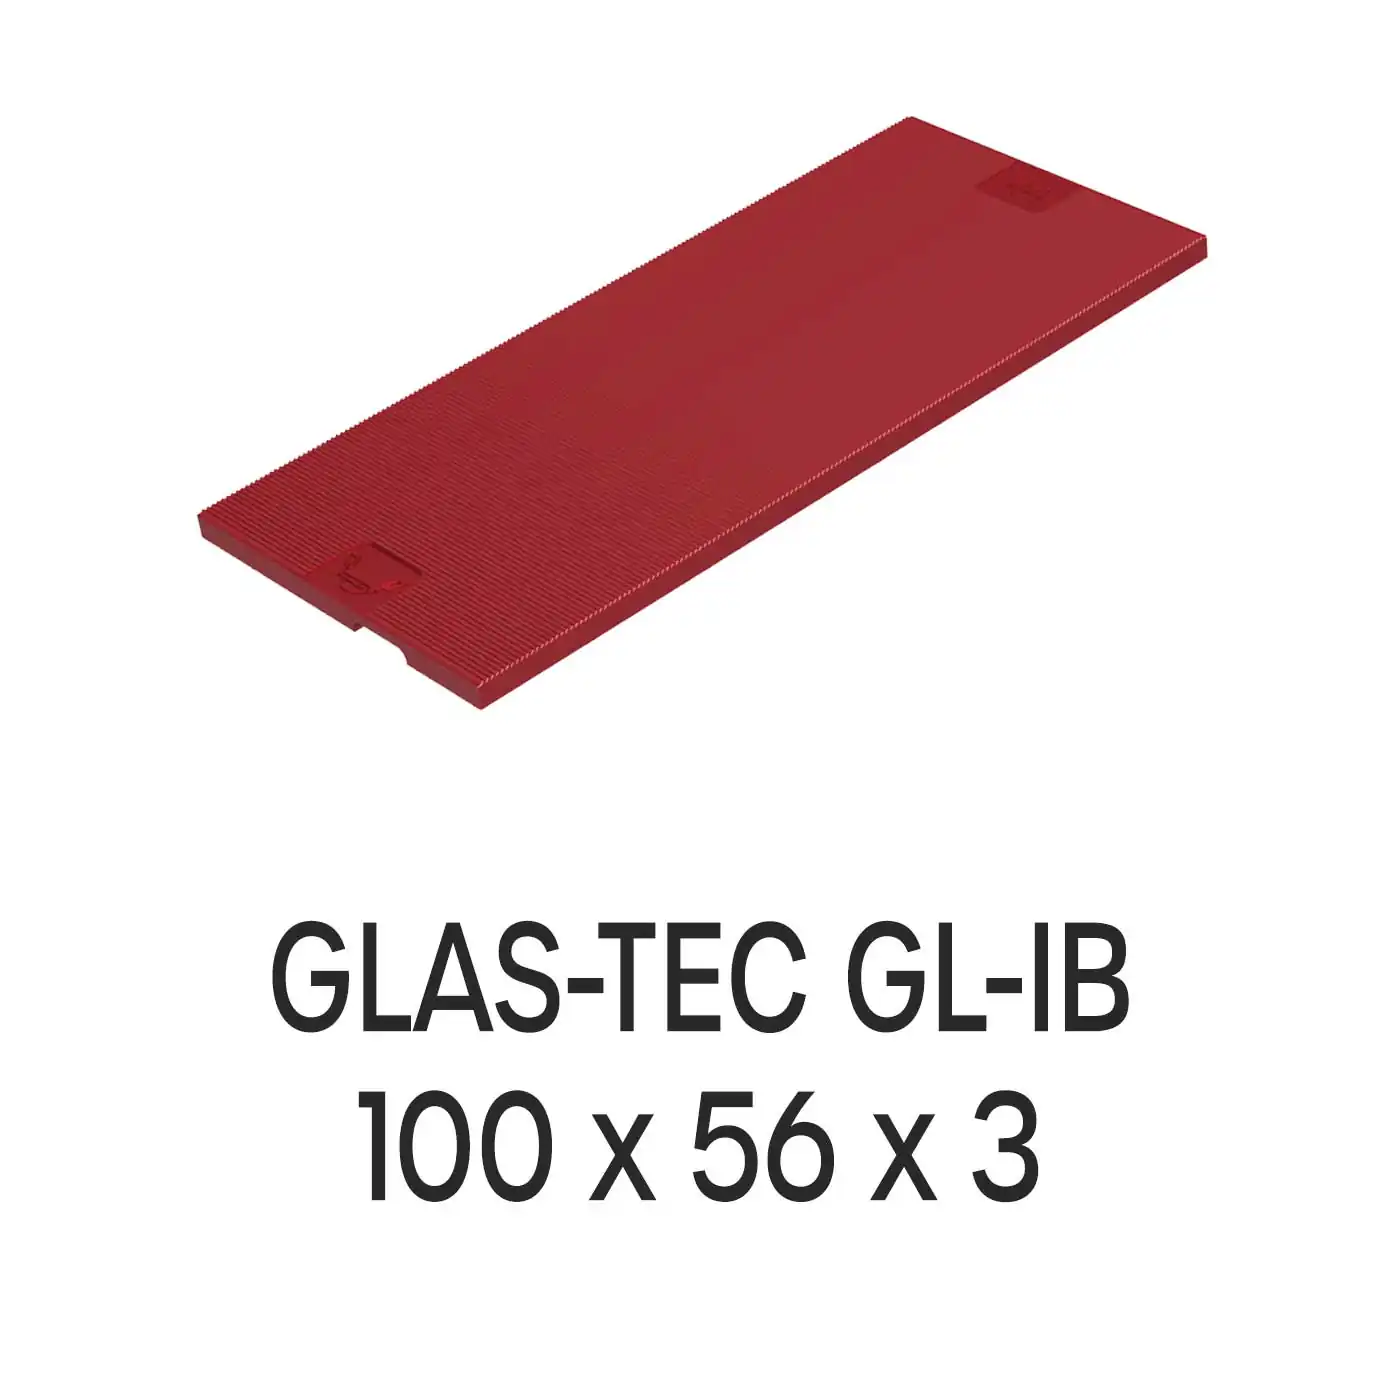 Roto Verglasungsklotz GLAS-TEC GL-IB, 100 x 56 x 3 mm, schwarz, 500 Stück